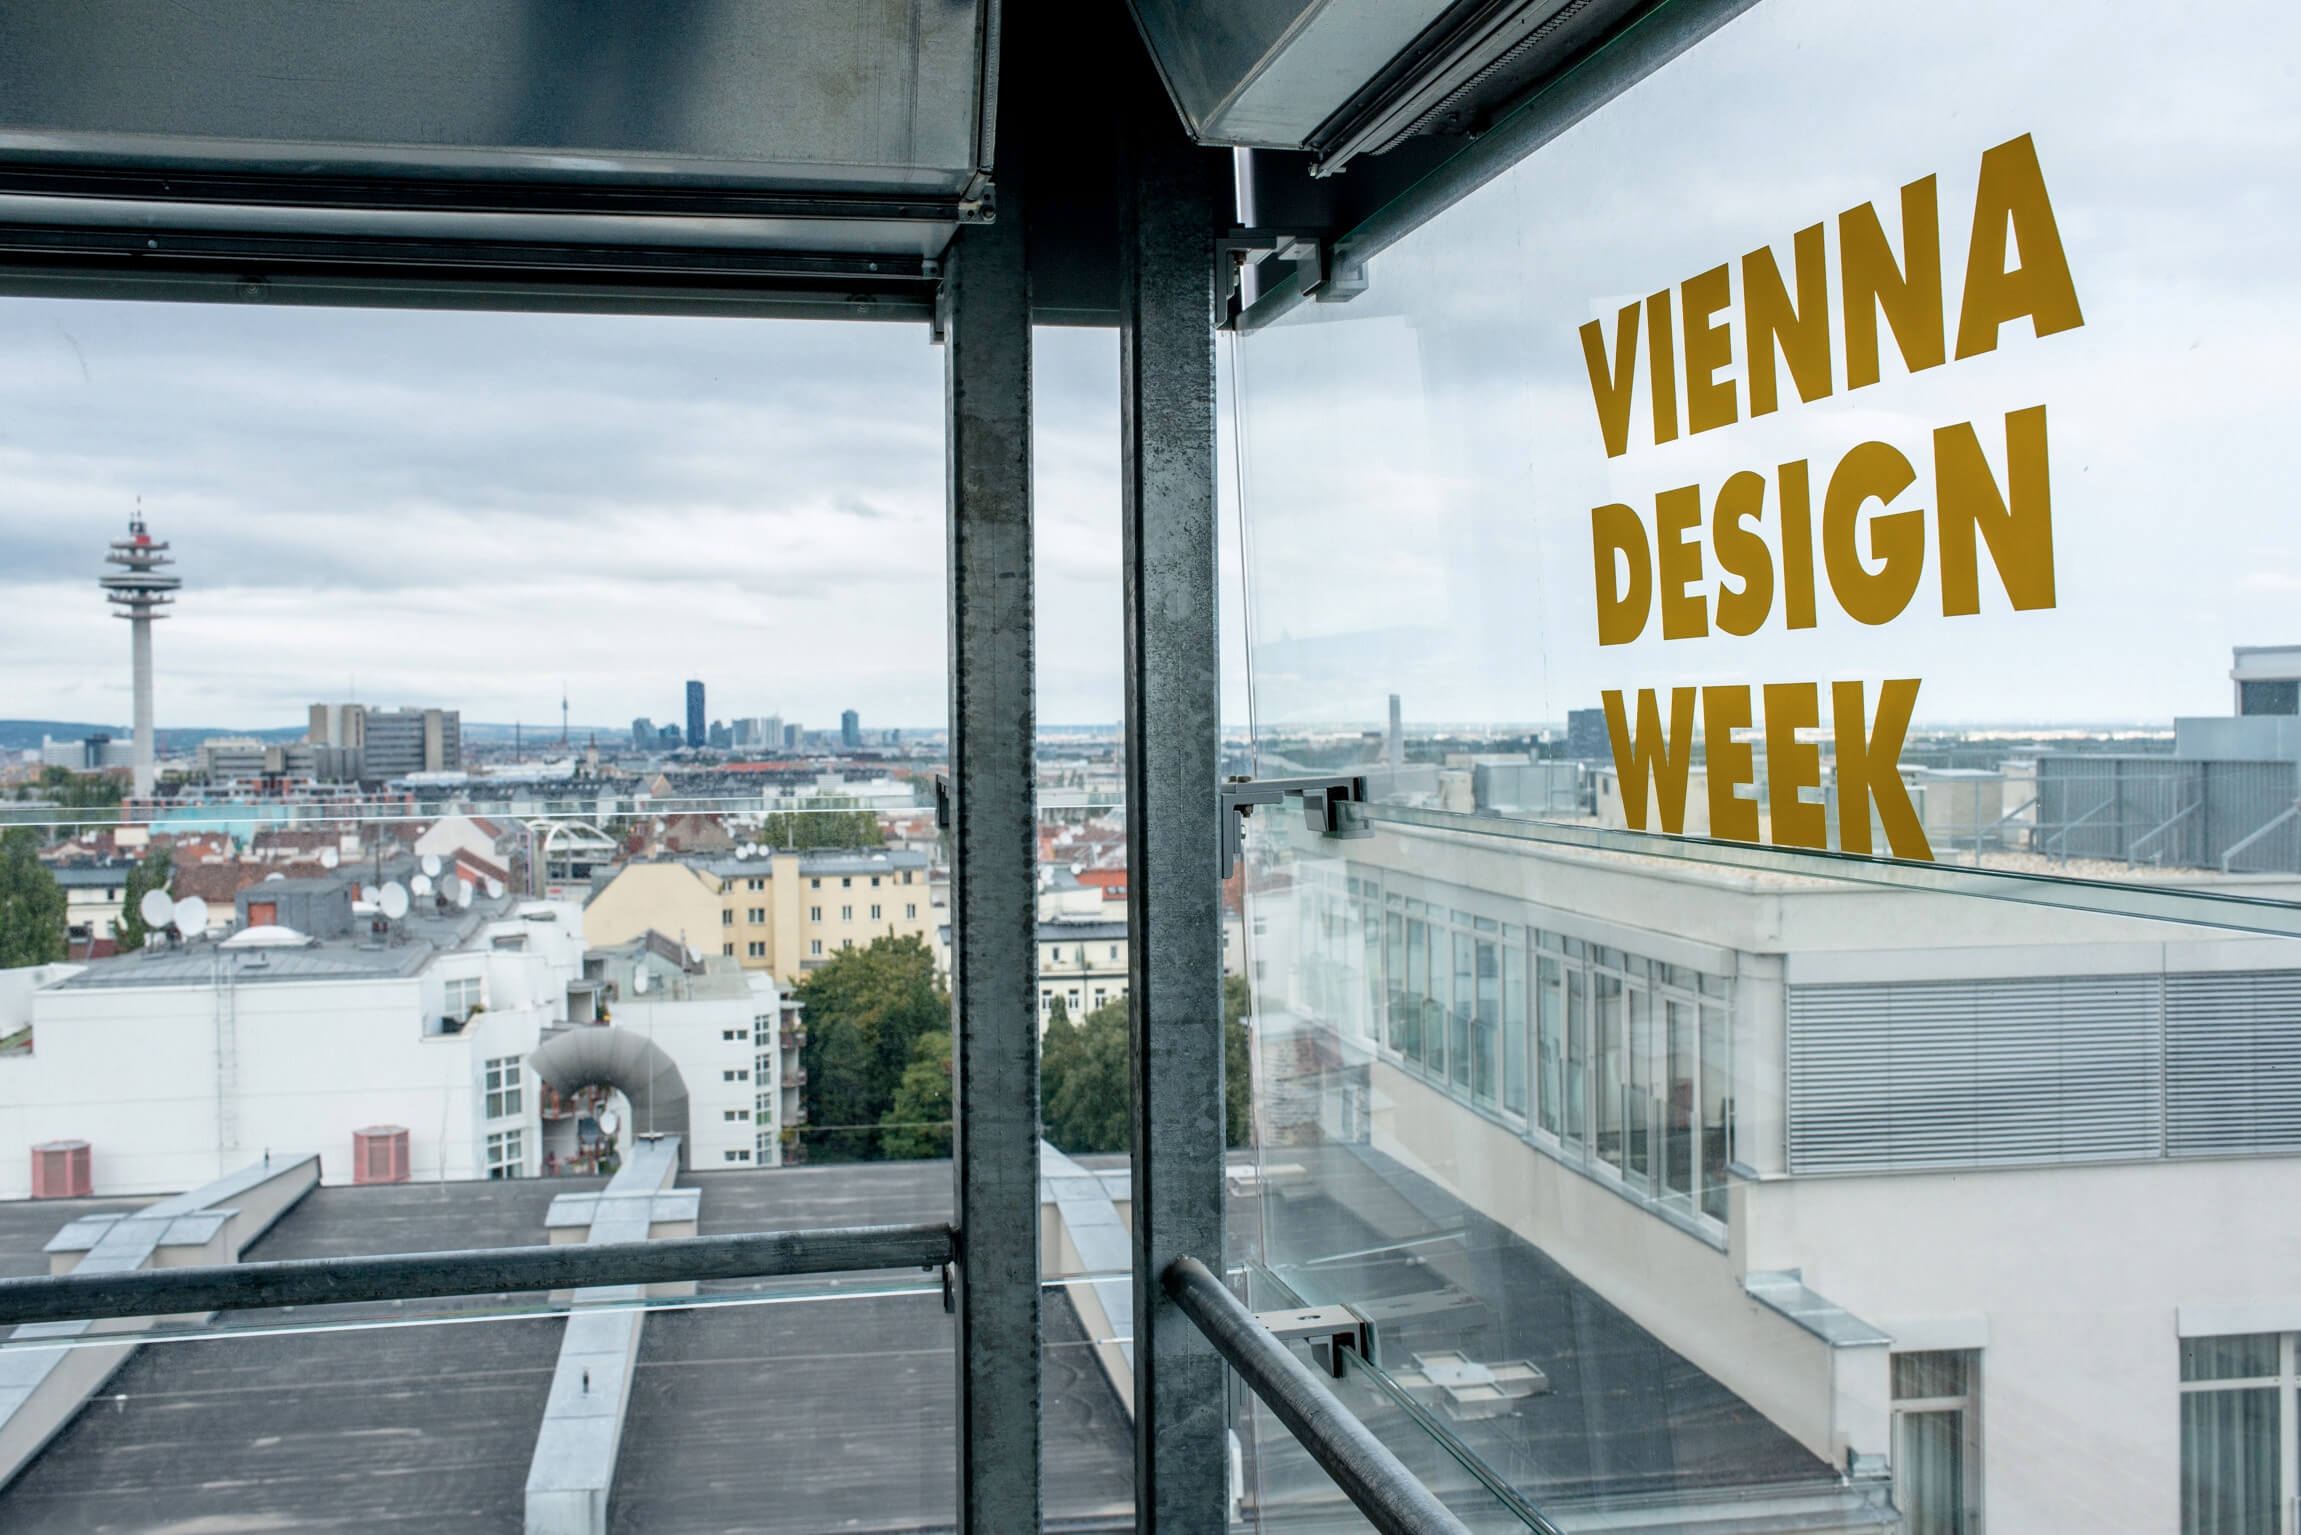 Beiträge in der ganzen Stadt Ziehen Sie los und lassen Sie sich inspirieren. Copyright VIENNA DESIGN WEEK Kollektiv Fischka Kramar Vienna Design Week